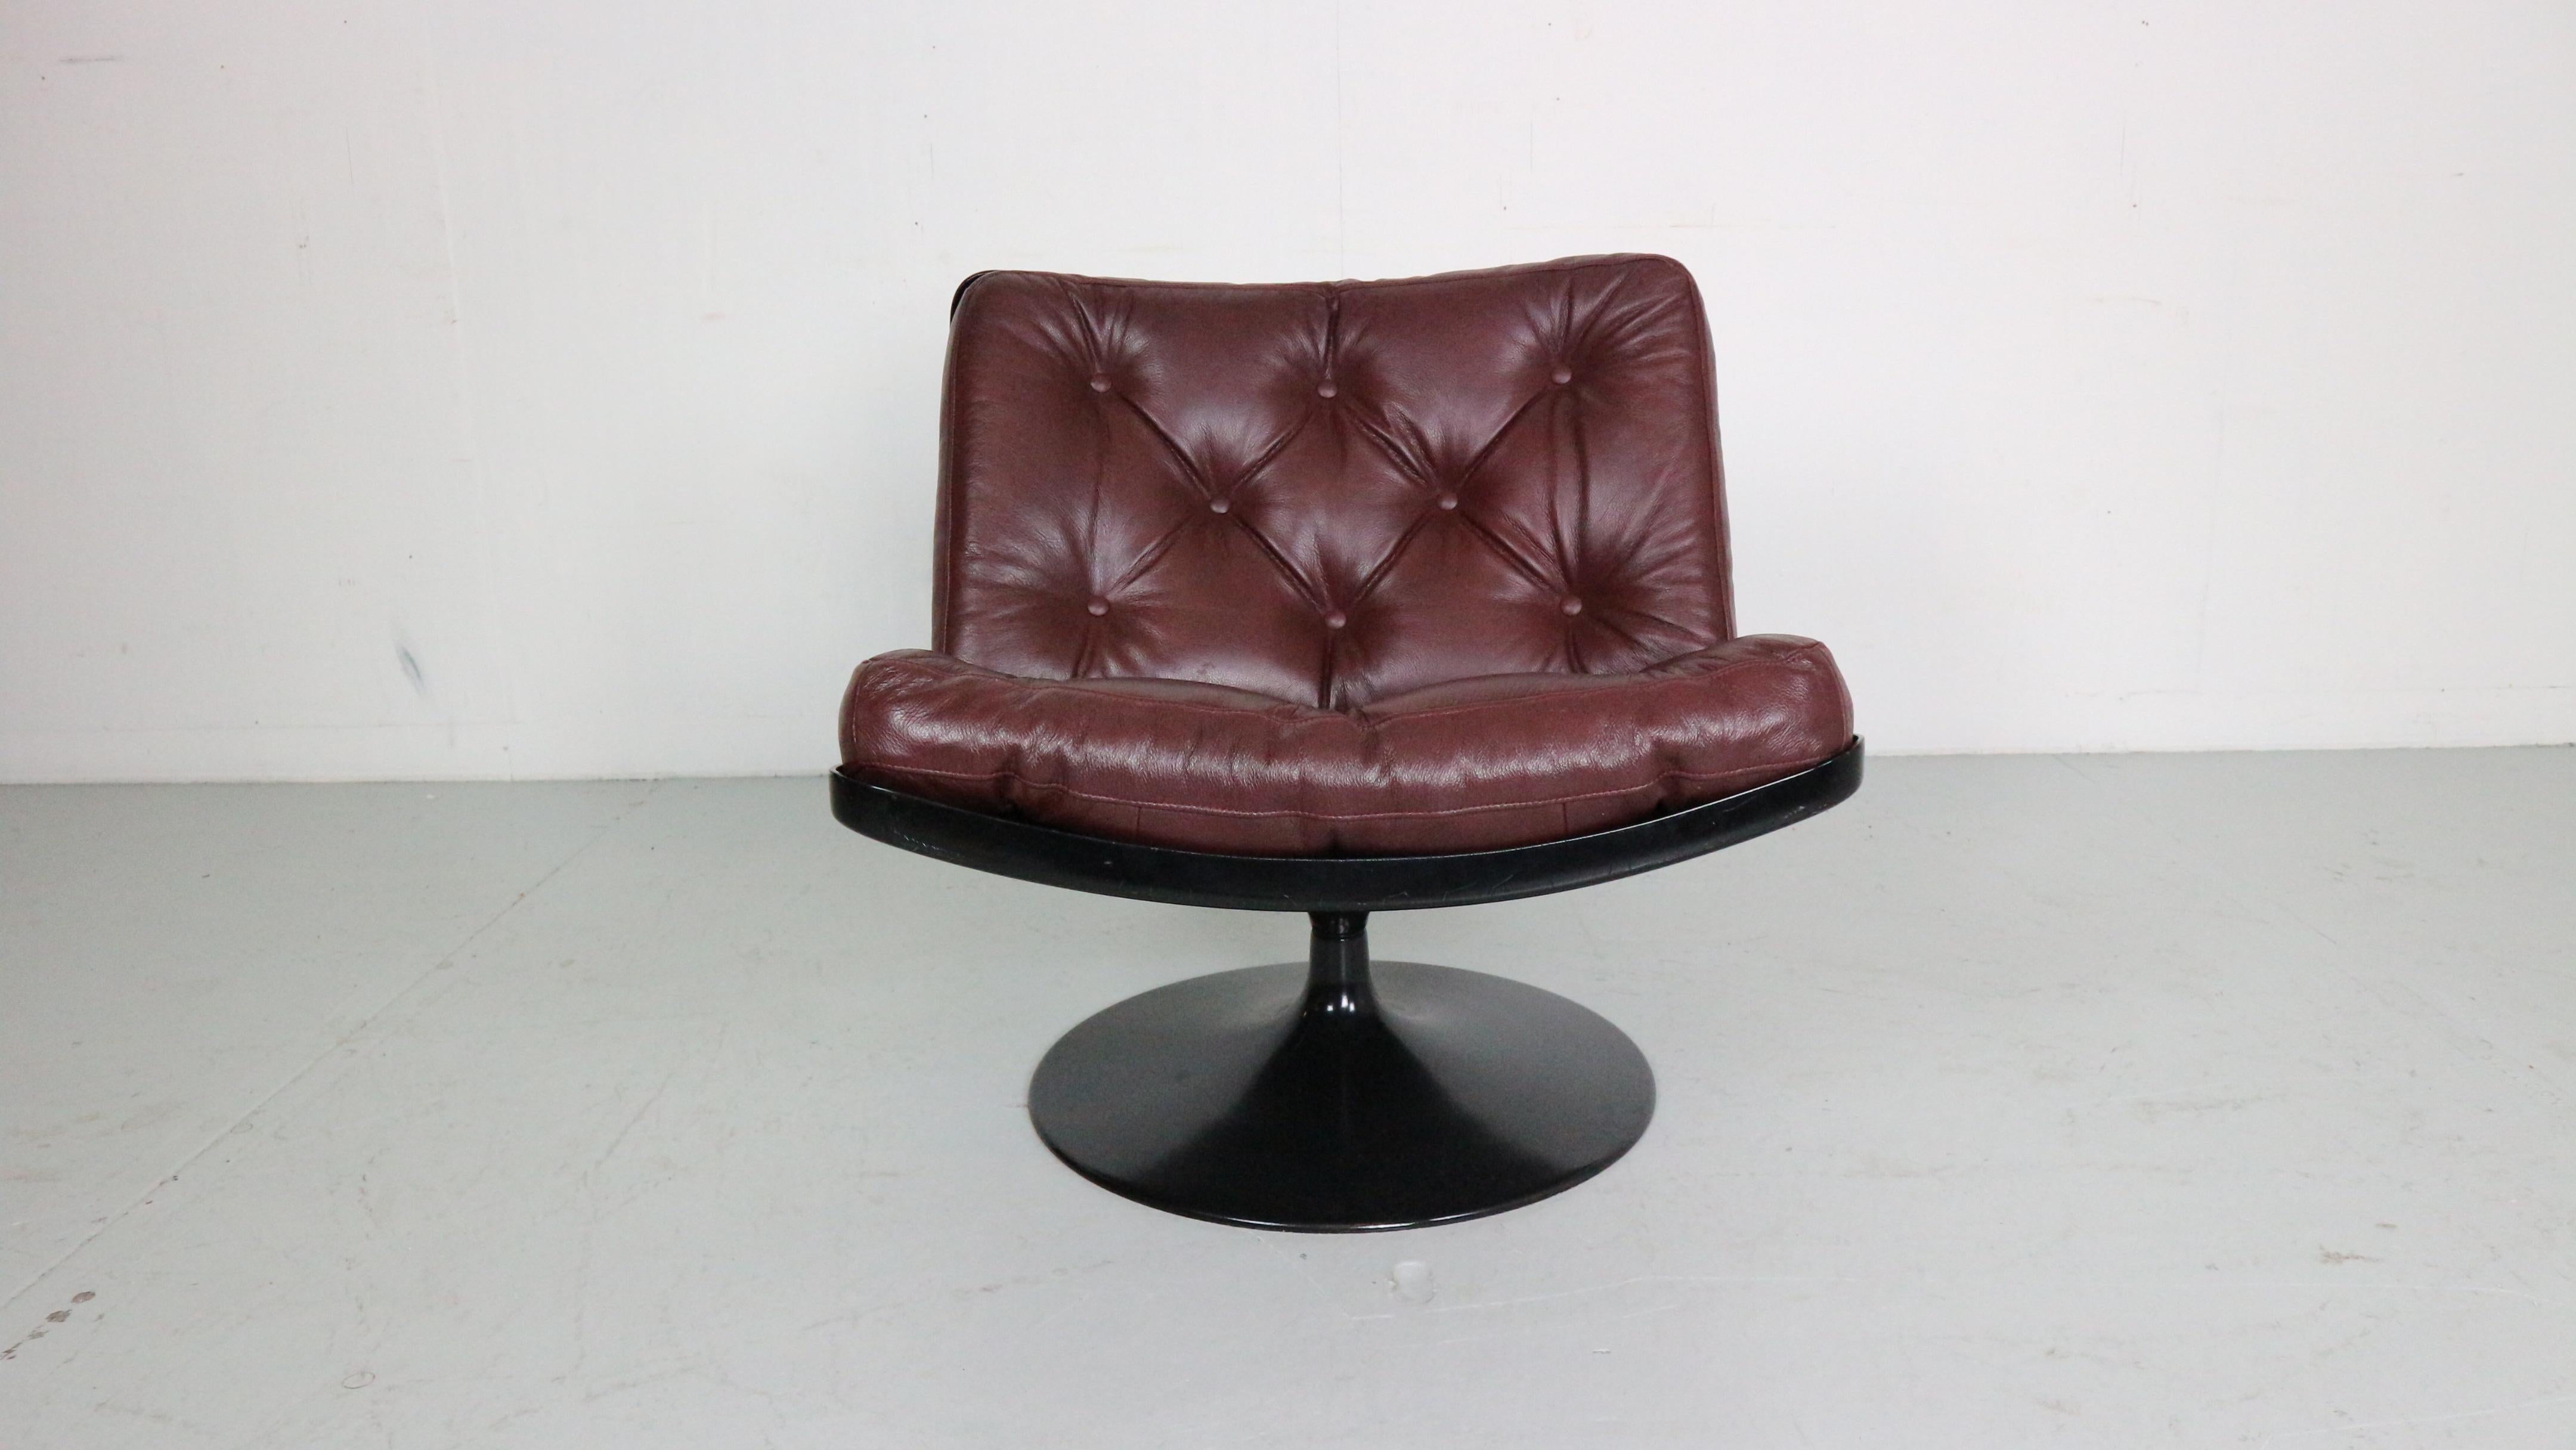 Chaise longue pivotante du milieu du siècle dernier, conçue par Geoffrey Harcourt en 1968 pour le célèbre mobilier néerlandais. Elle a été produite par Artifort.

En 1962, le designer britannique Geoffrey Harcourt (1935) a rejoint l'équipe